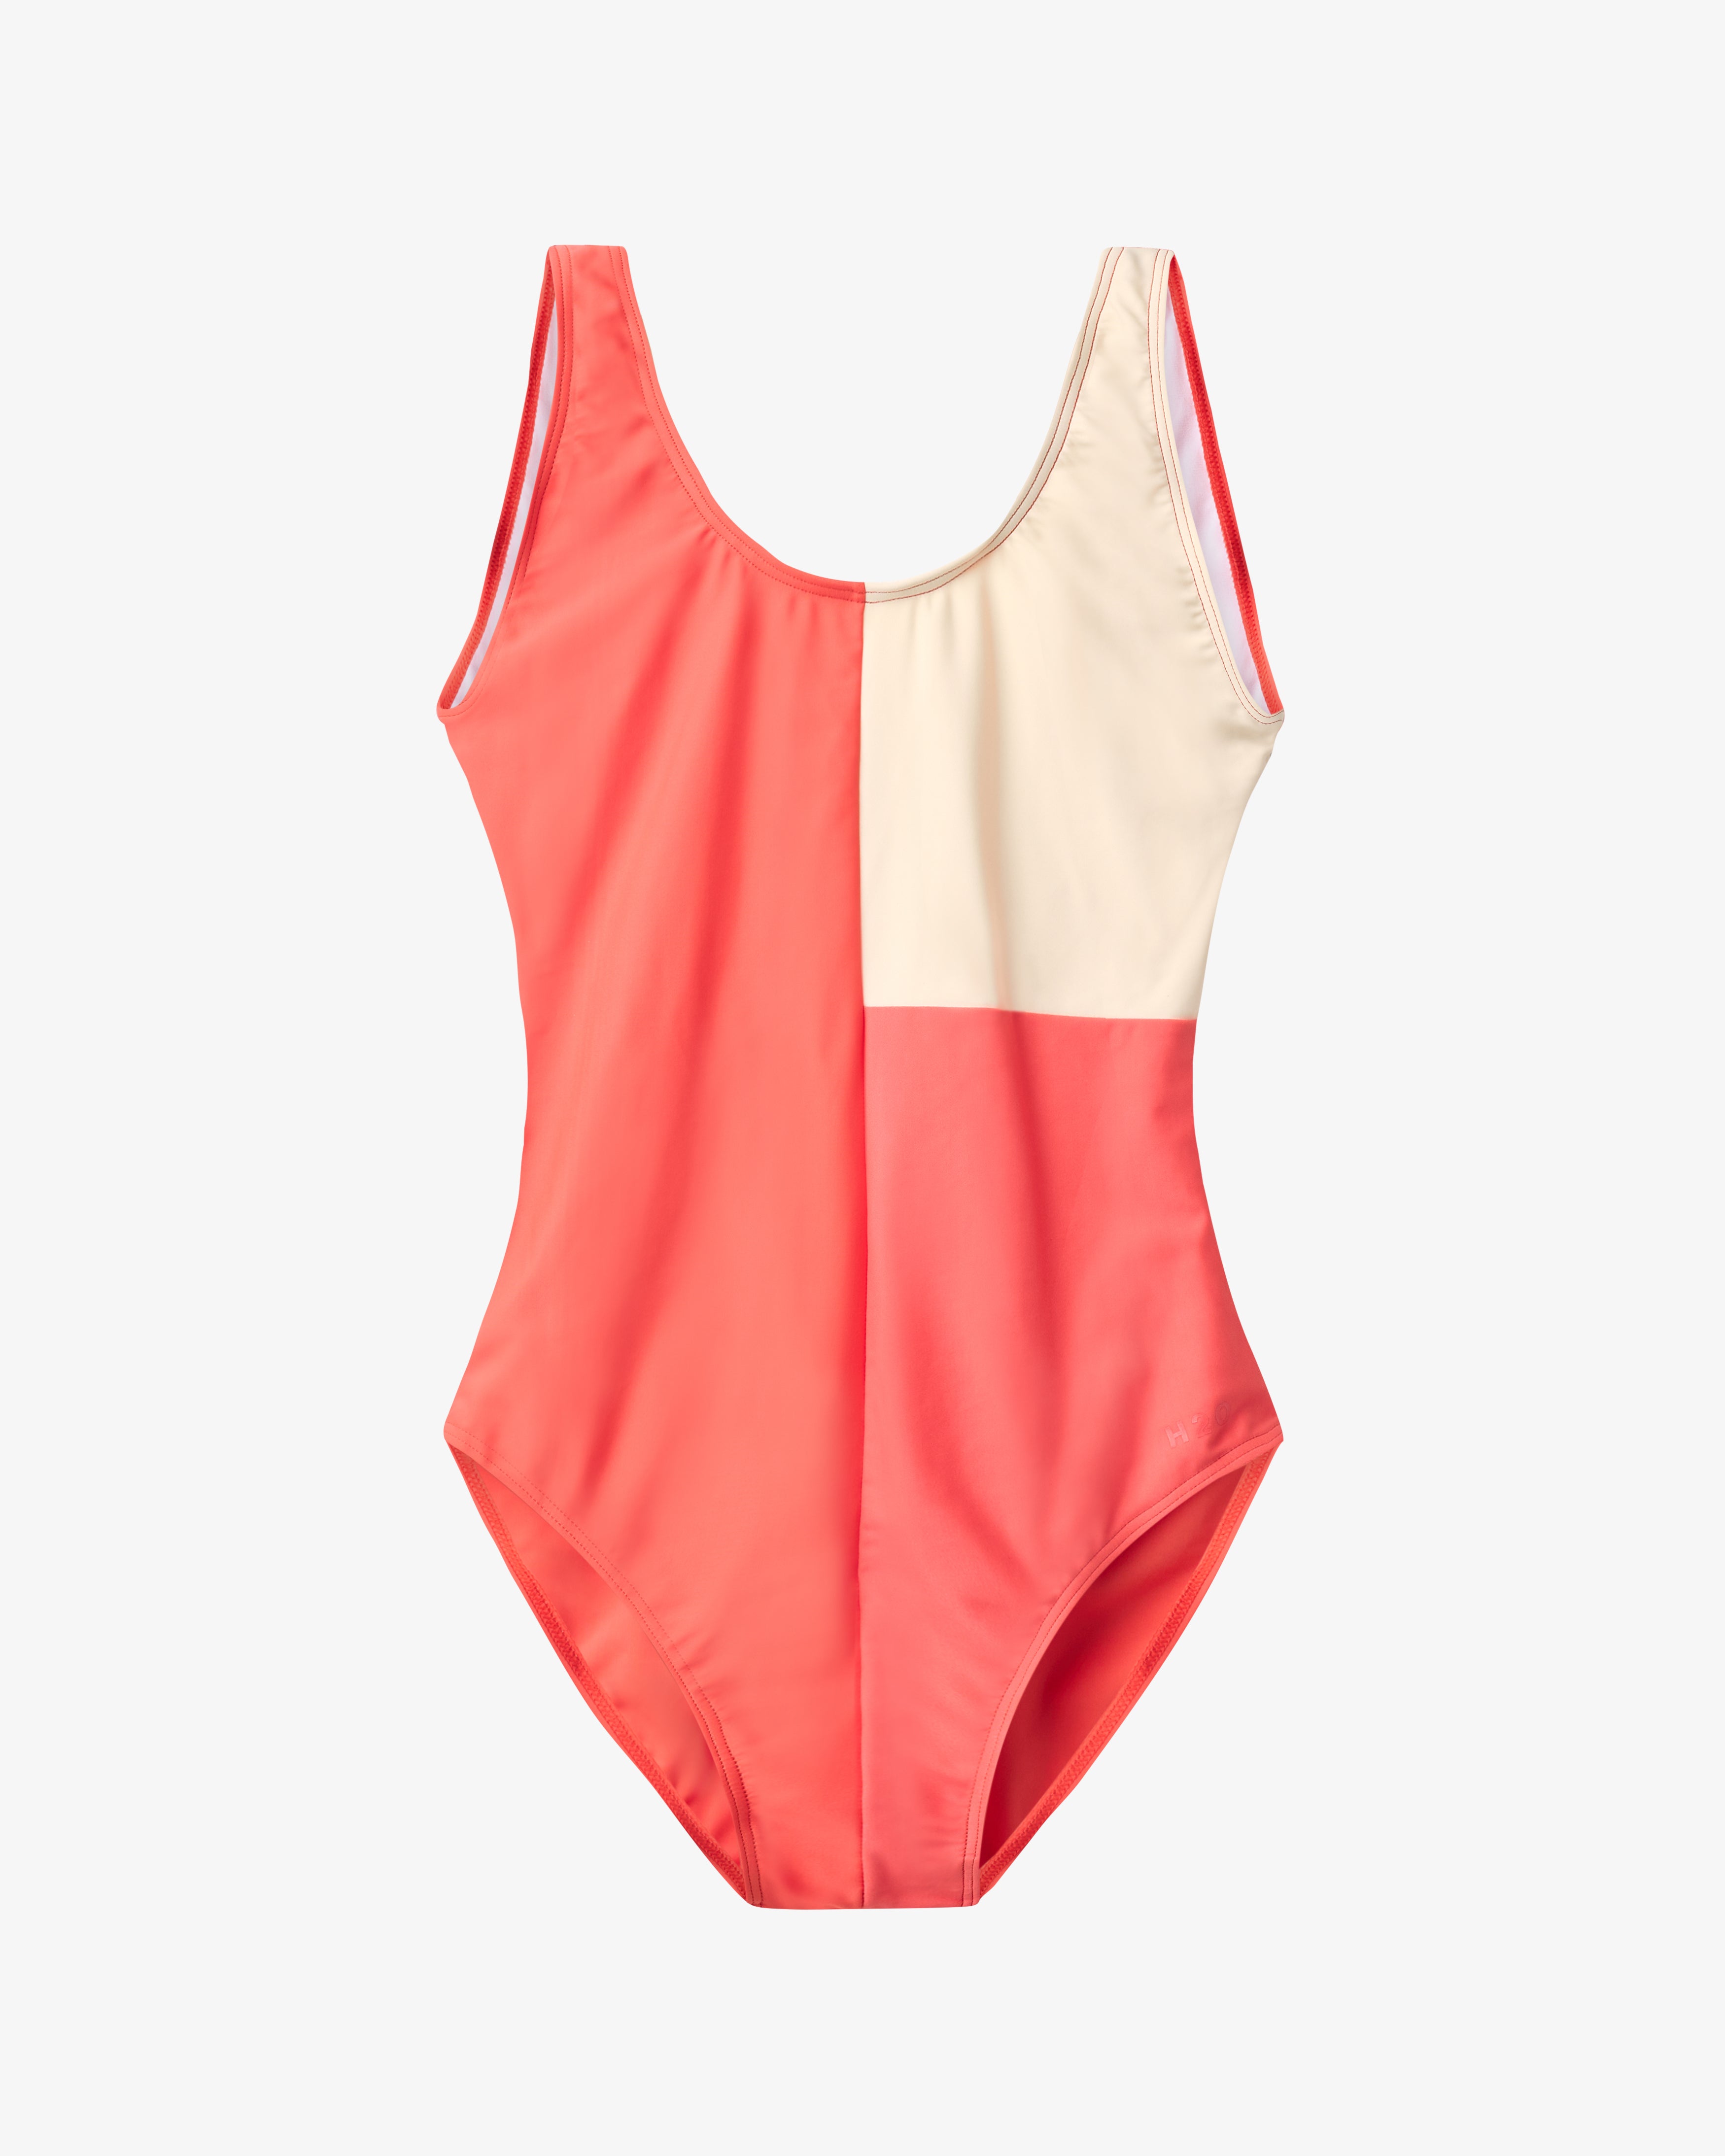 Møn Colorblock Swim Suit - Pumpkin/Light Peach